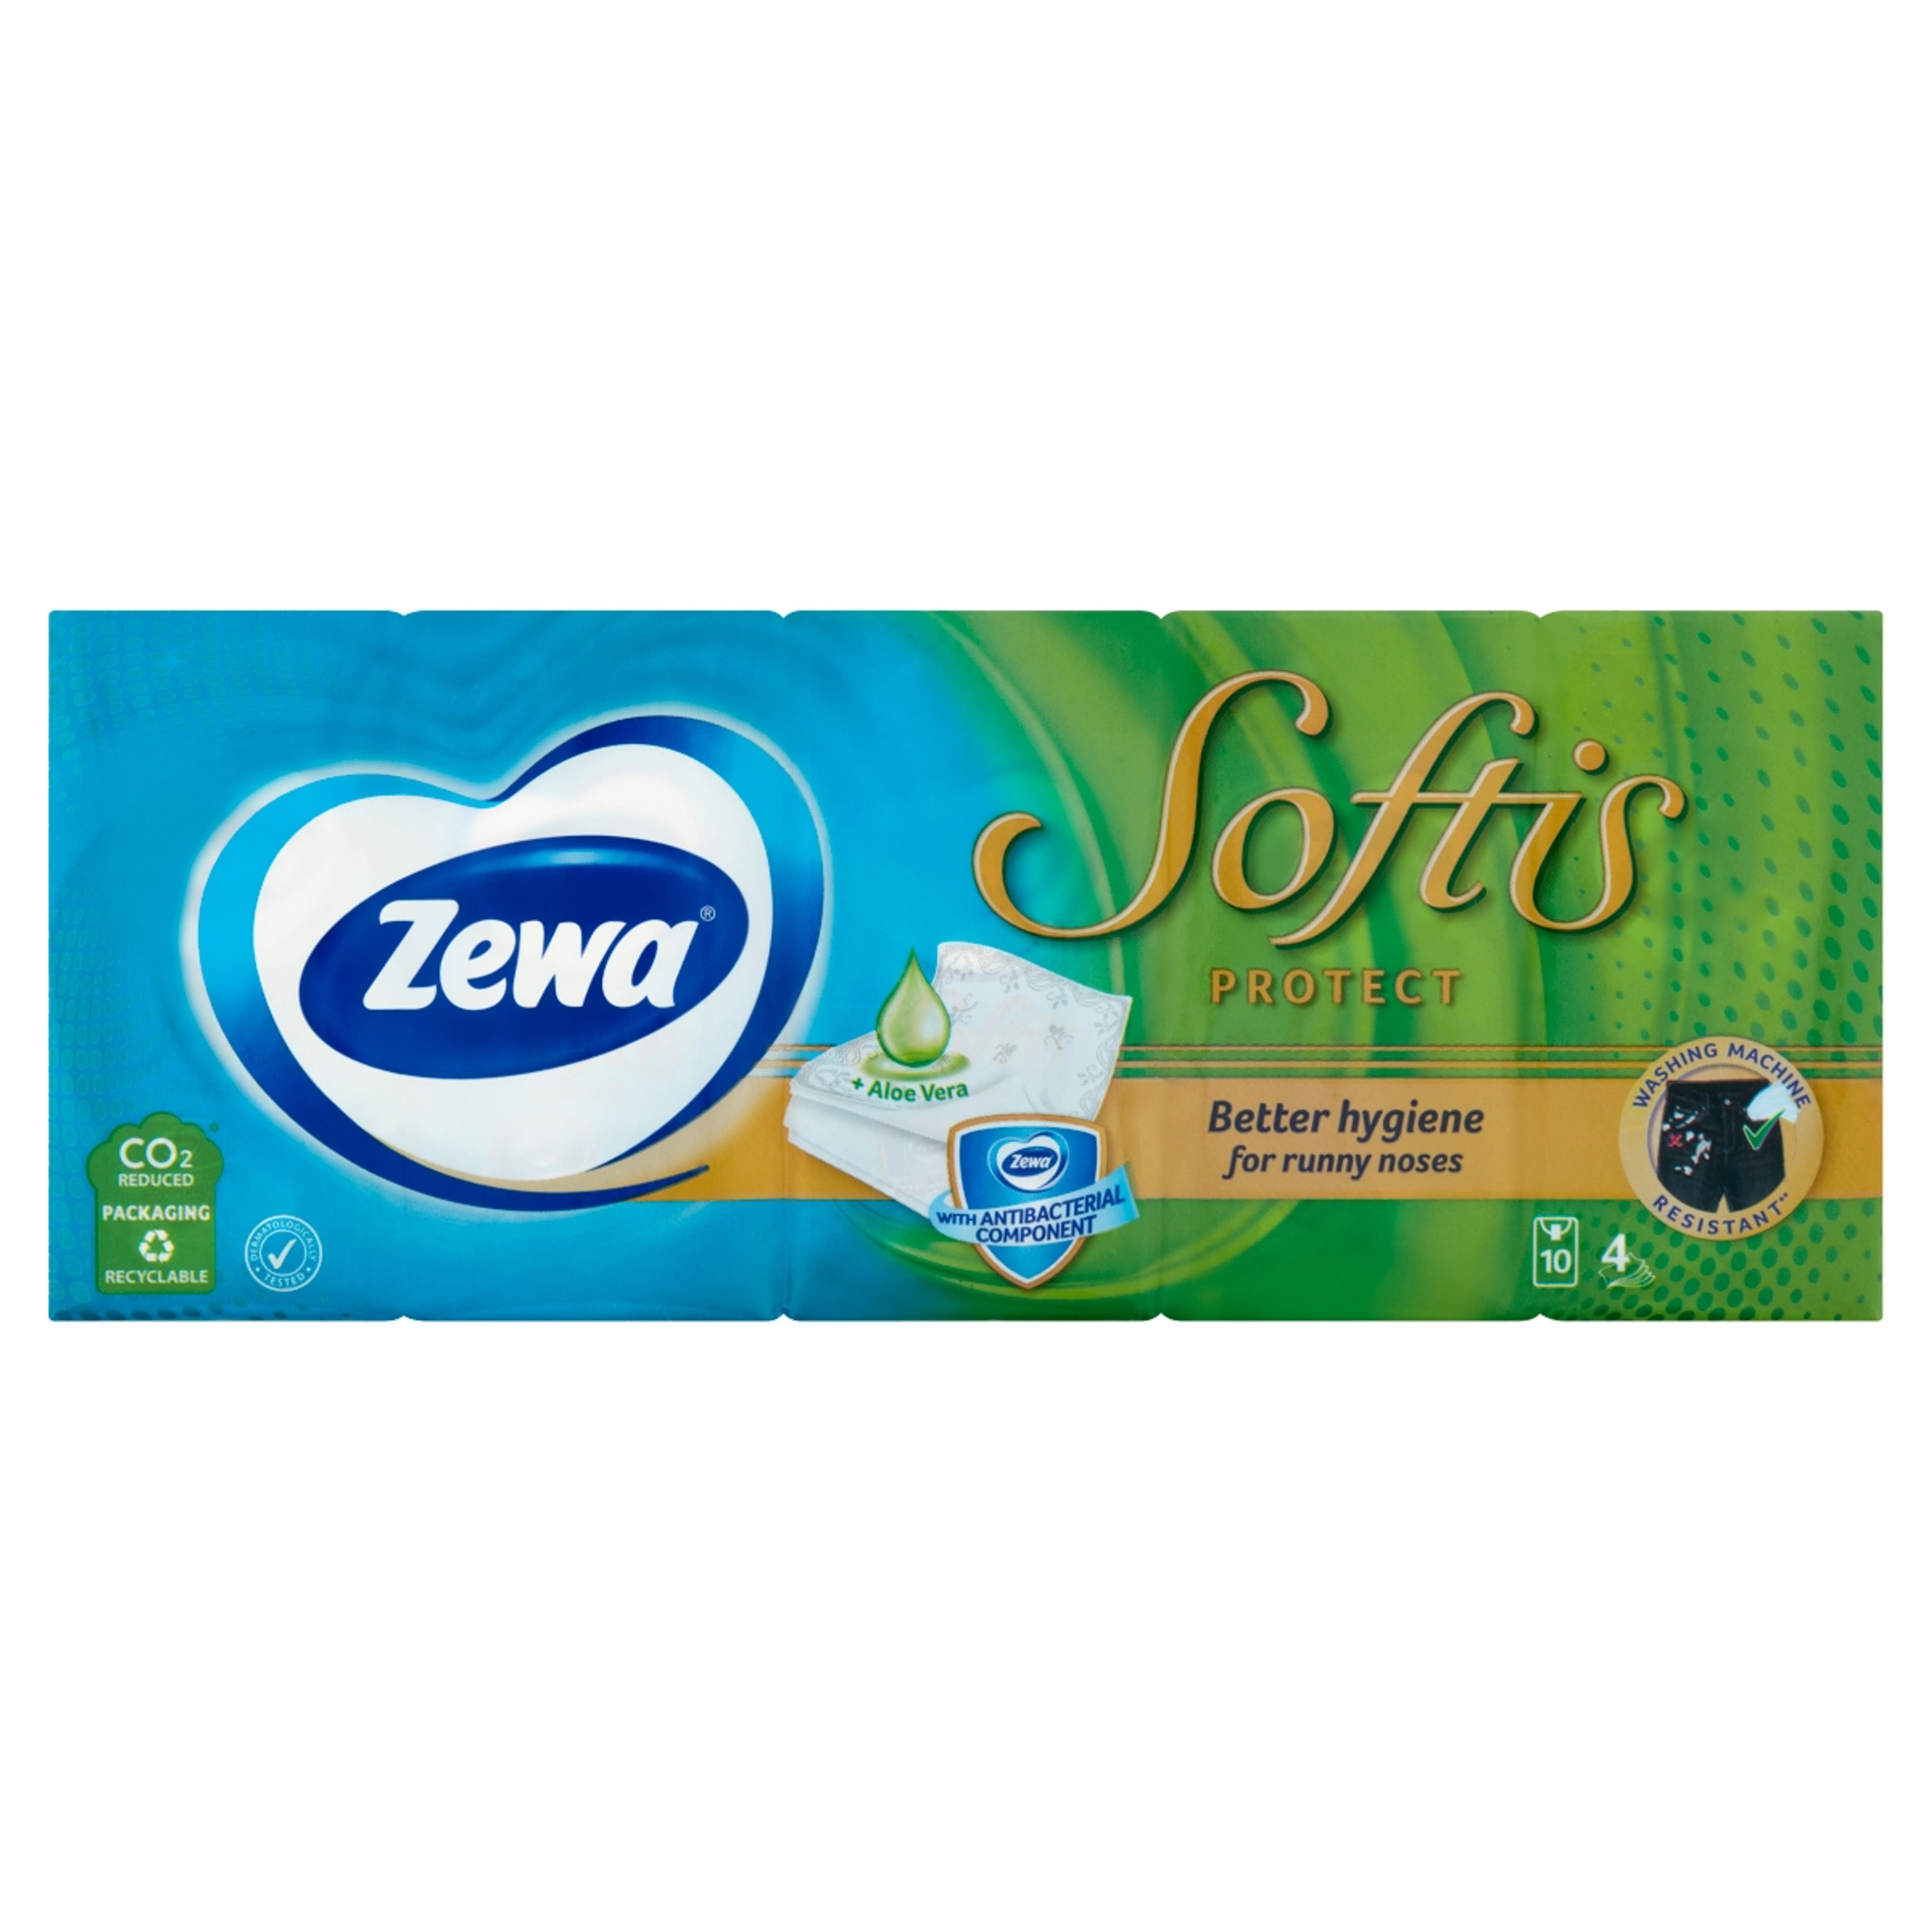 Zewa Softis Protect Illatosított 4 Rétegű Papírzsebkendő 10x9 db - 90 db